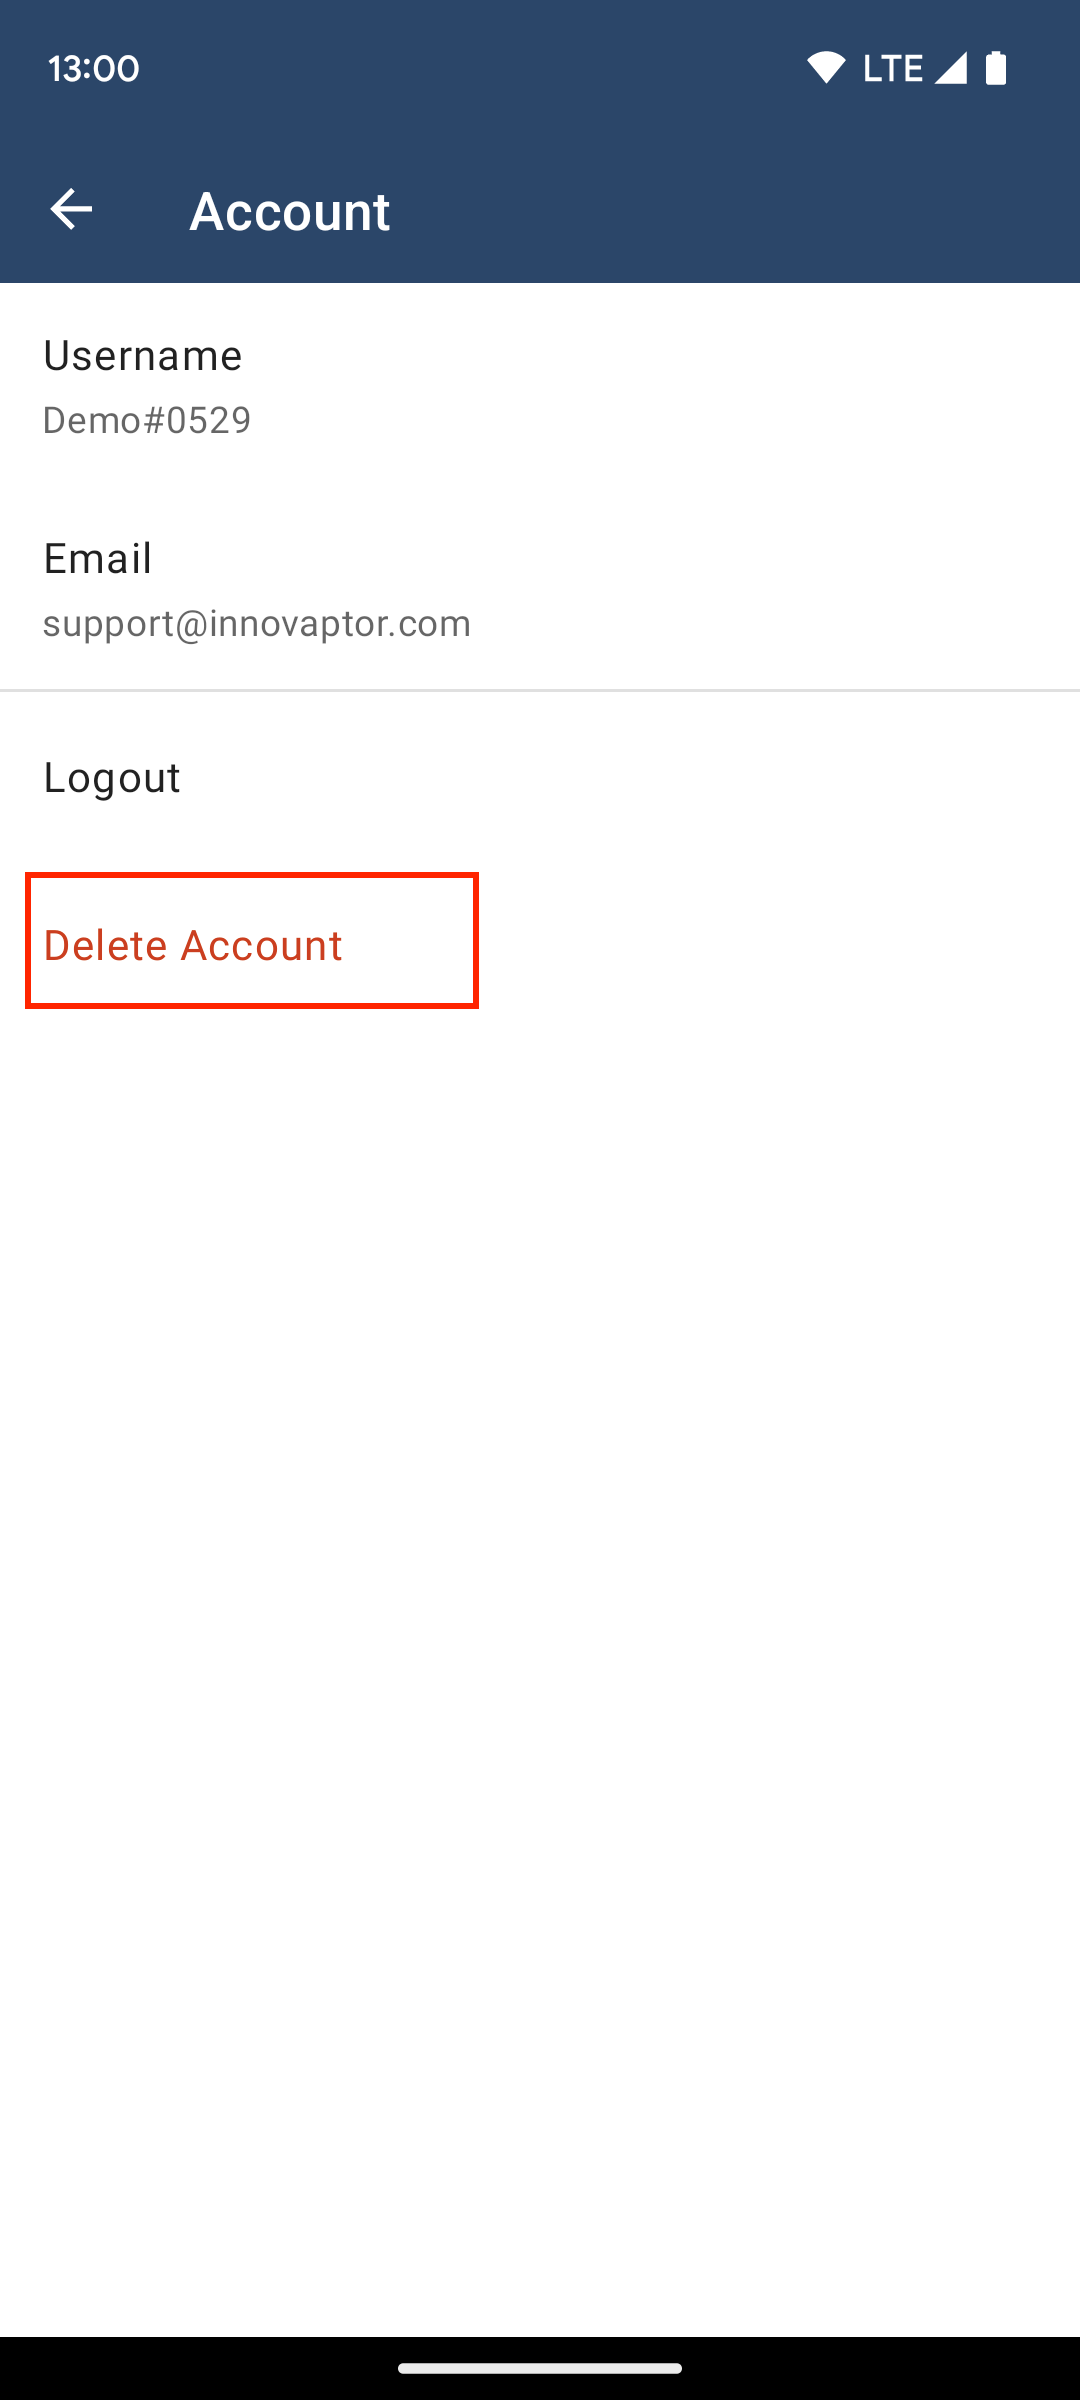 Tap the Delete Account Button